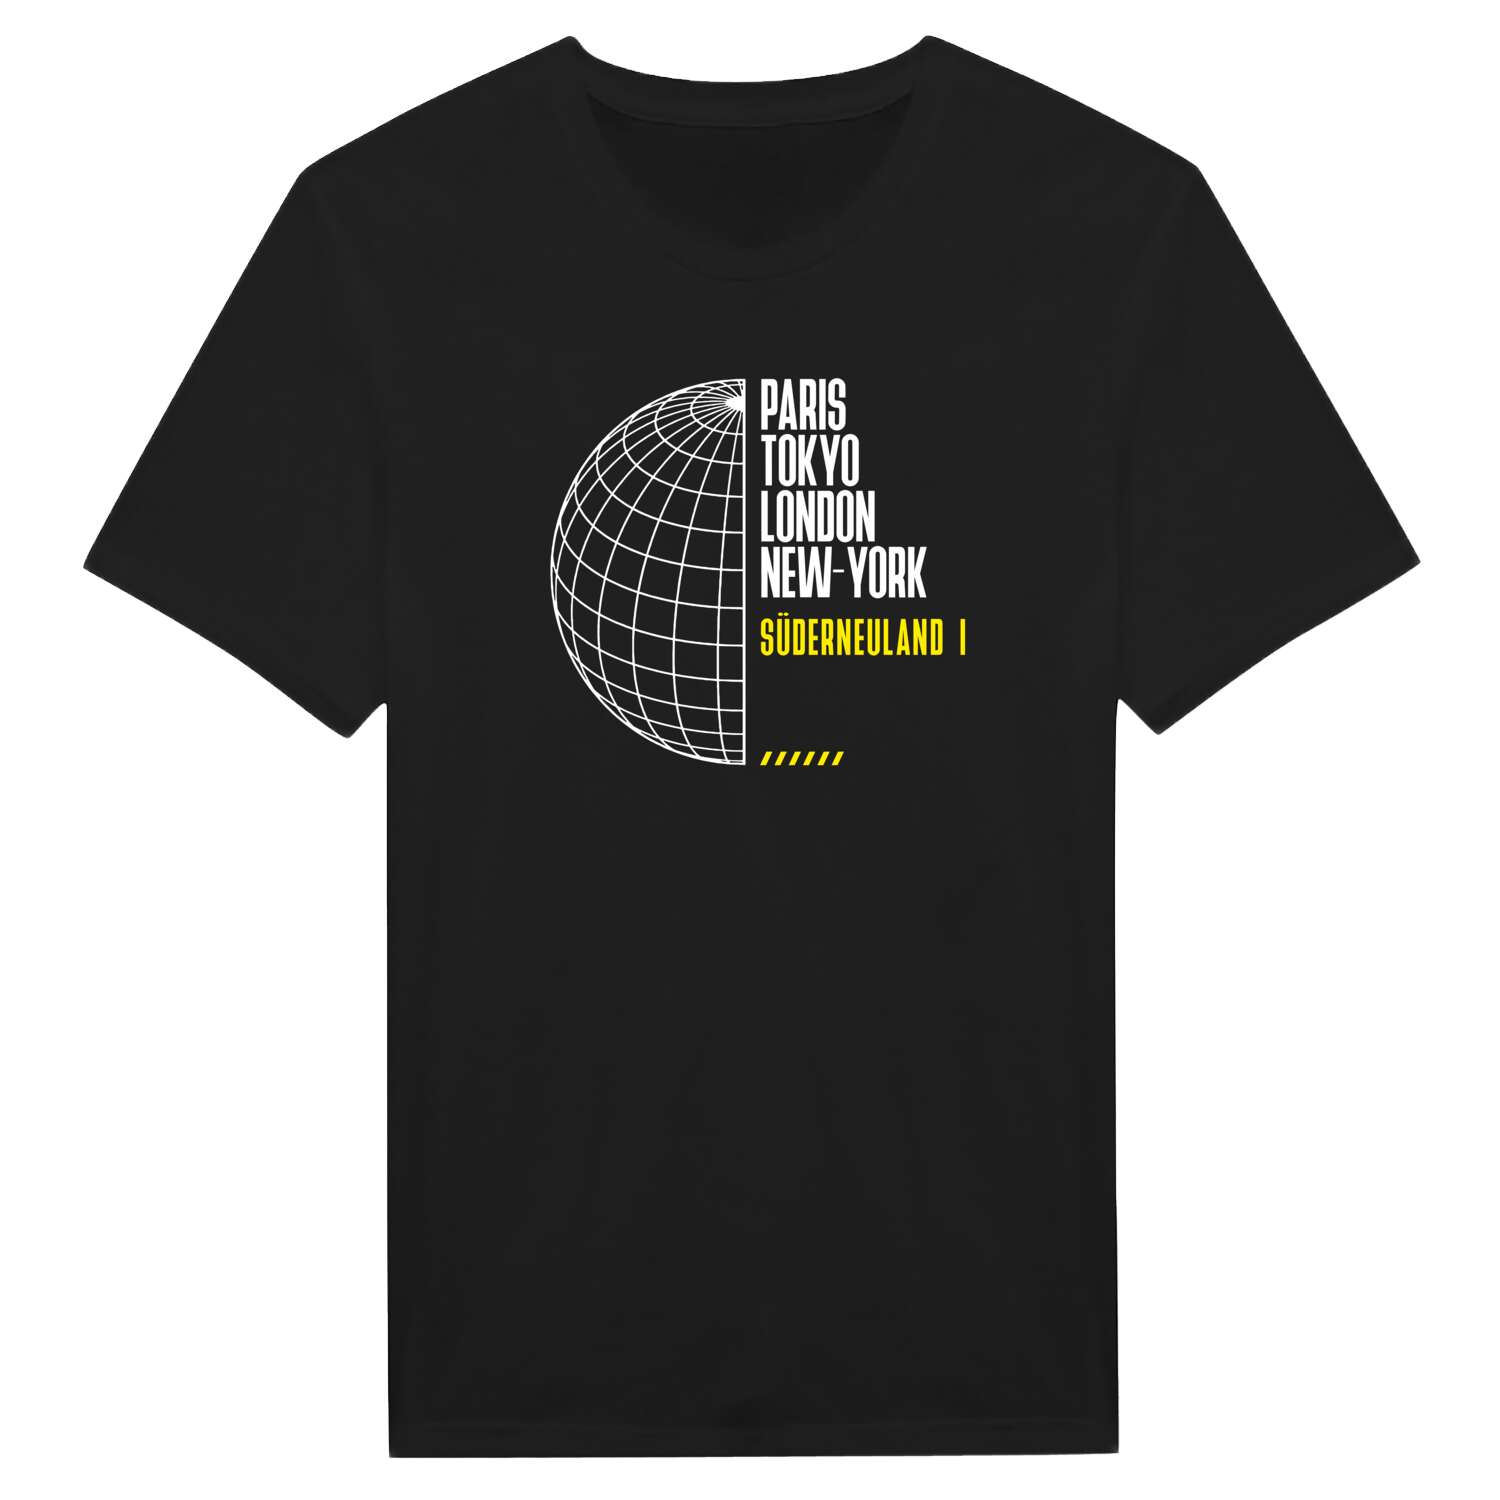 Süderneuland I T-Shirt »Paris Tokyo London«